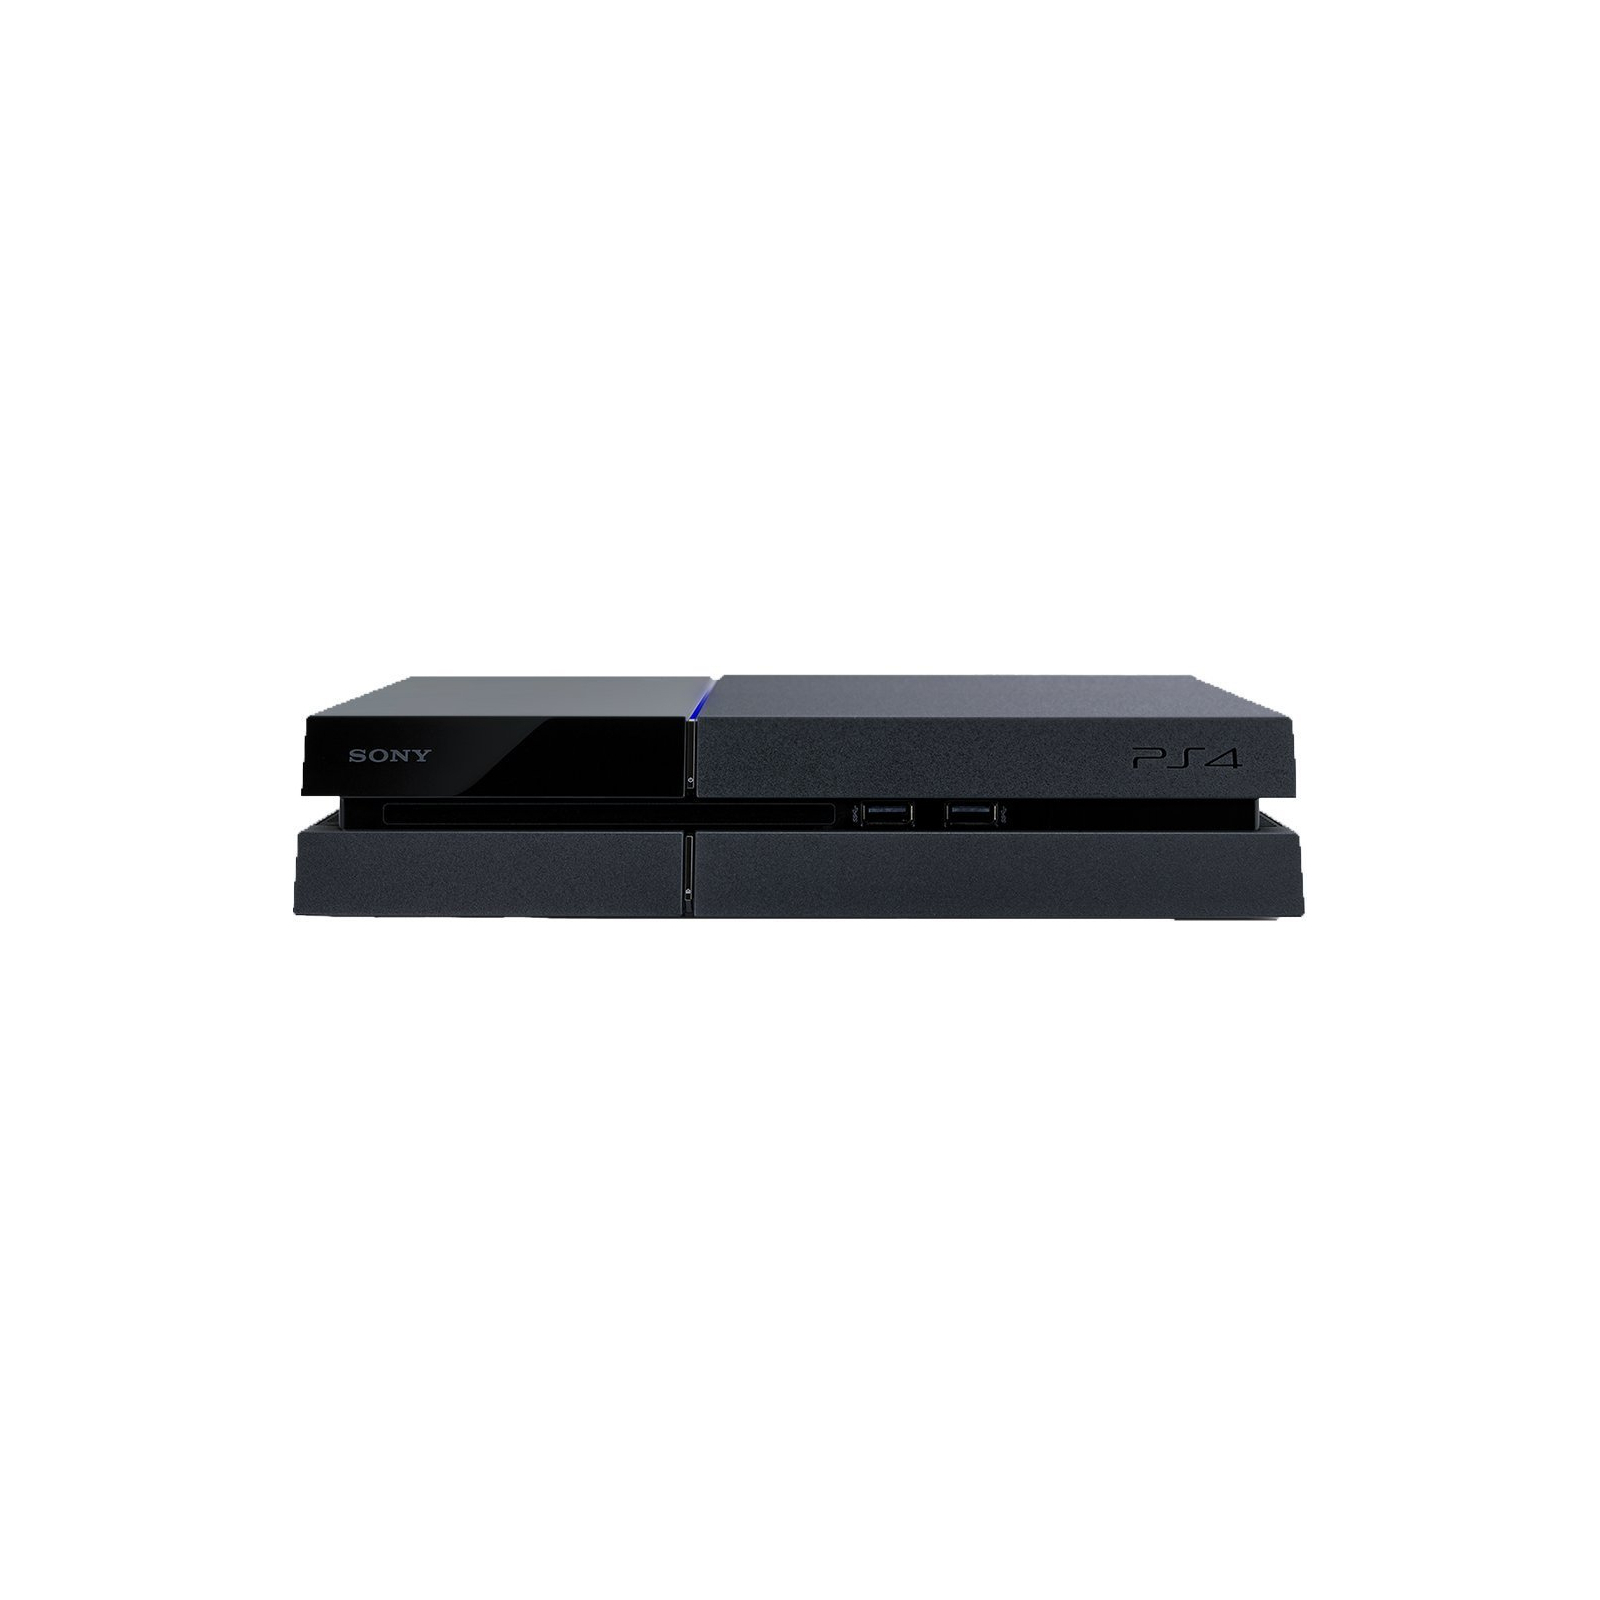 Игровая консоль Sony PlayStation 4 Pro 1TB (Fortnite) (9941507) изображение 2